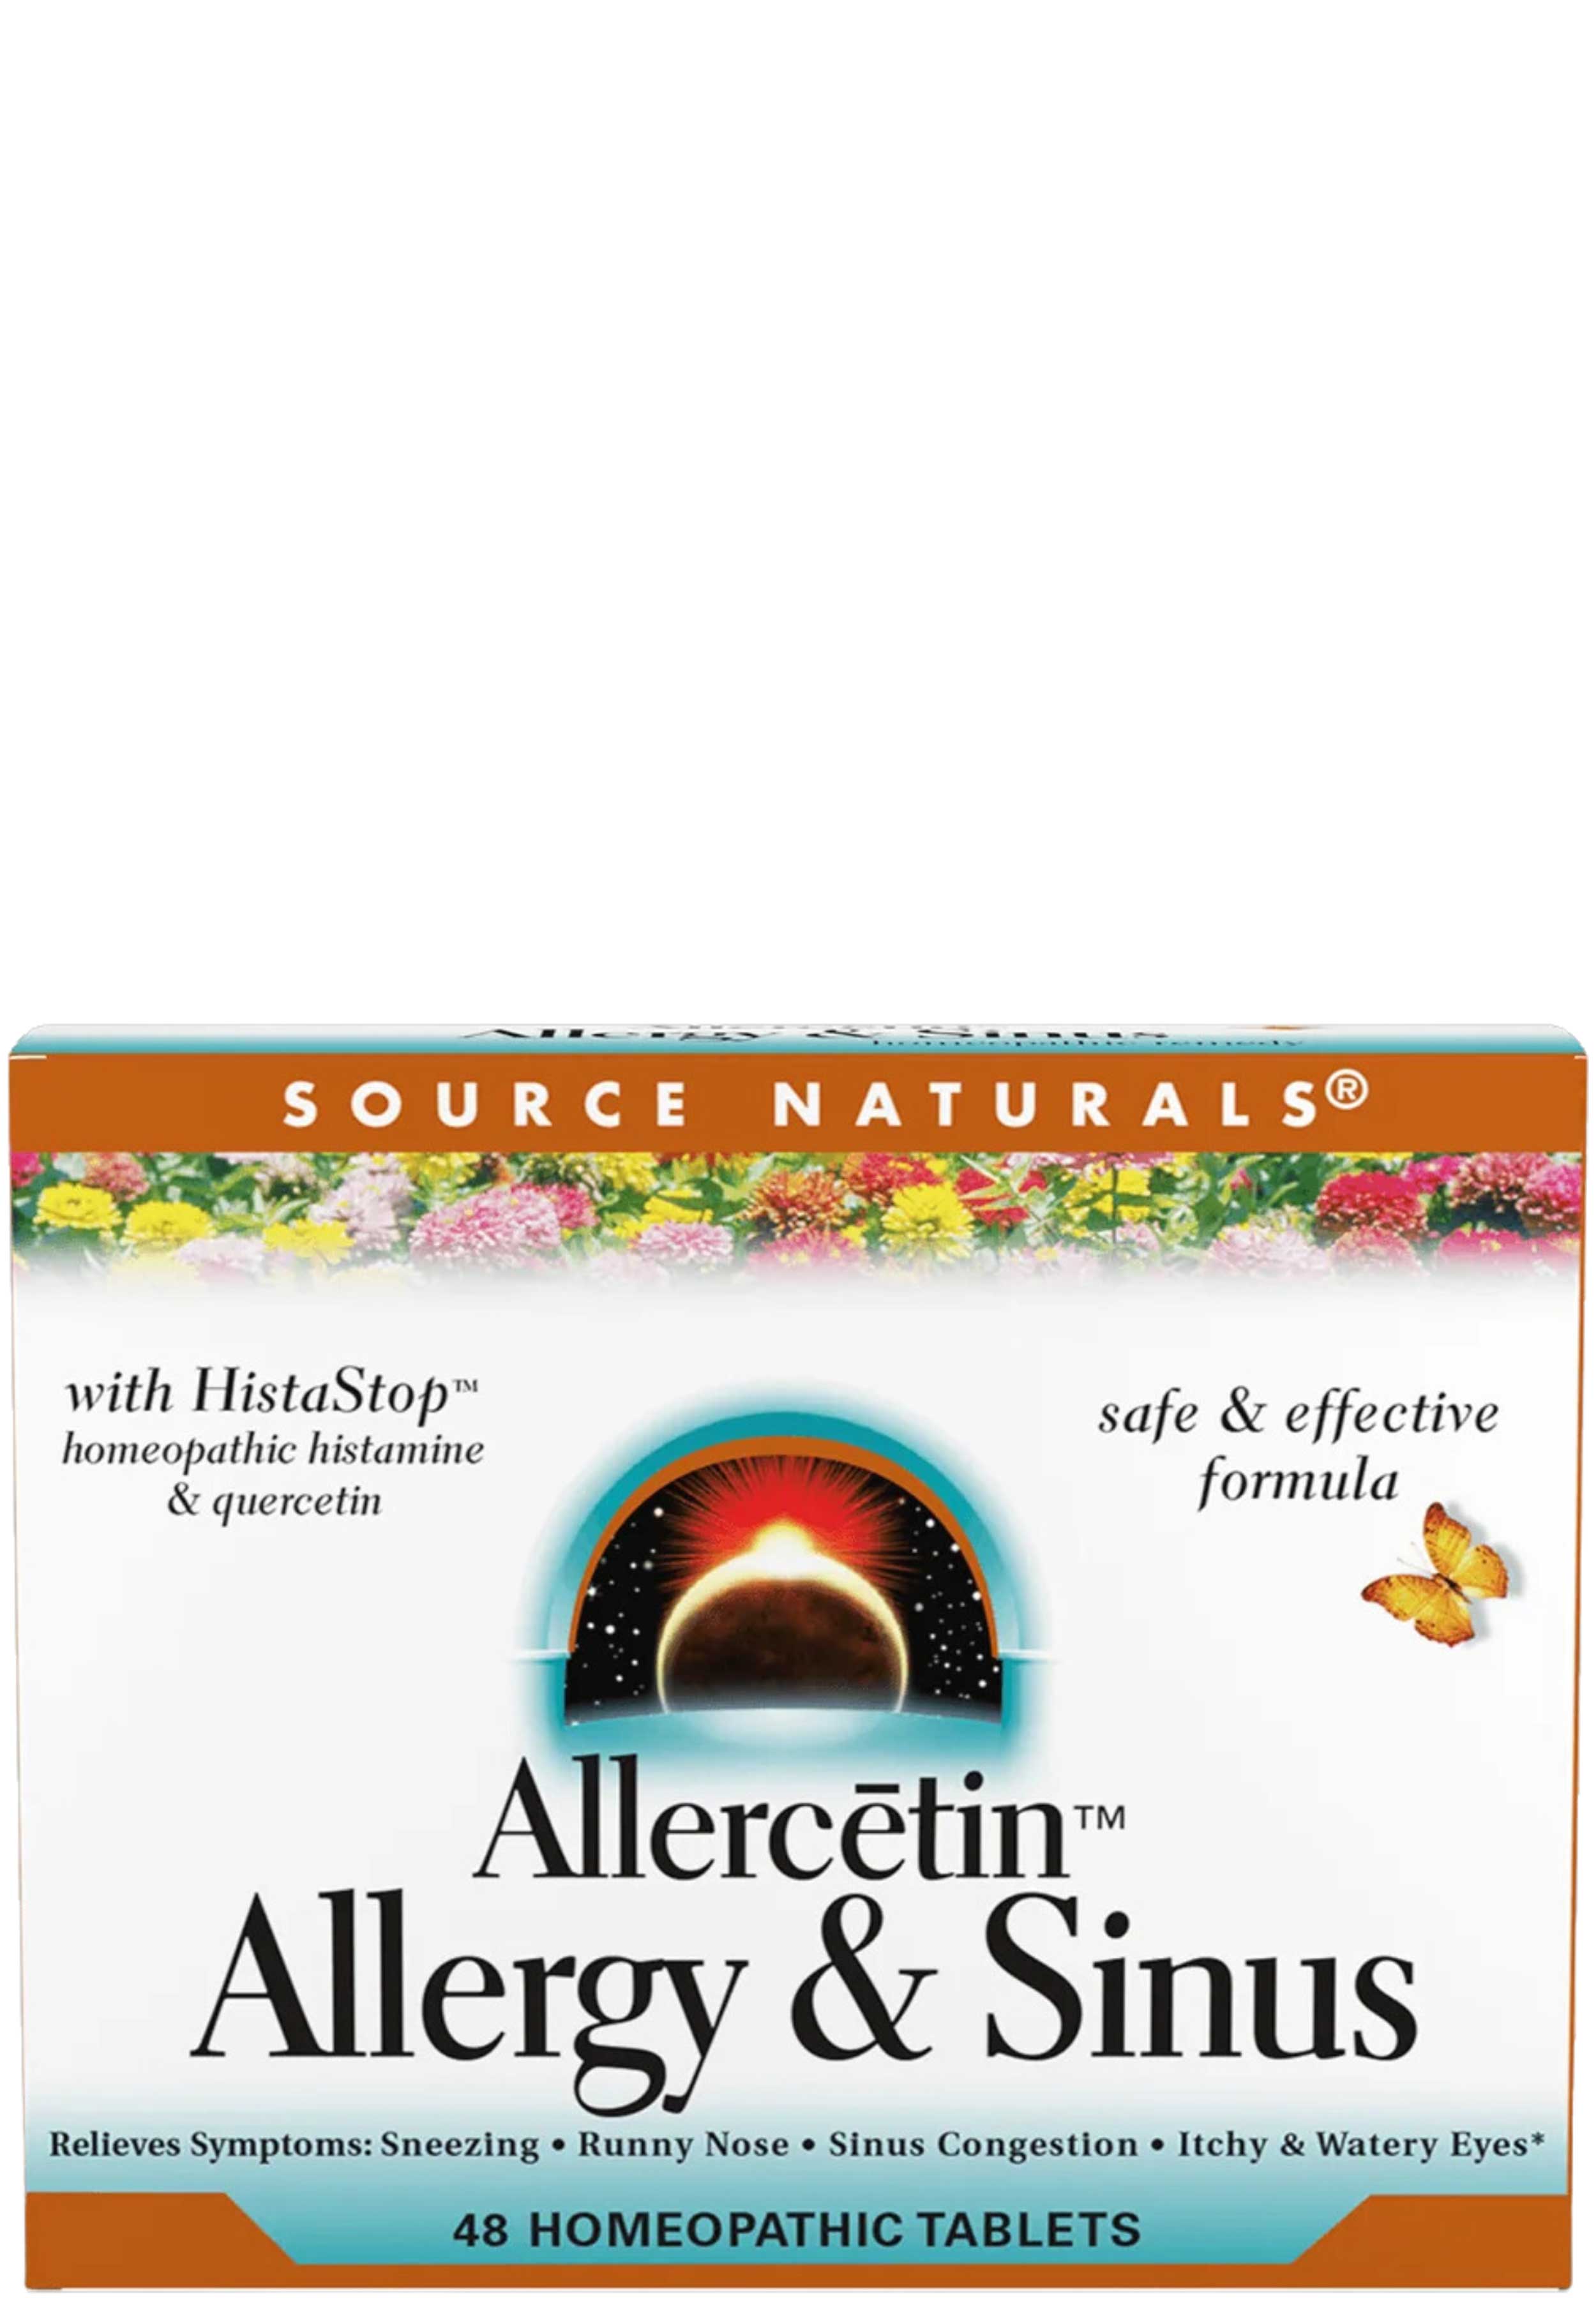 Source Naturals Allercetin Allergy & Sinus